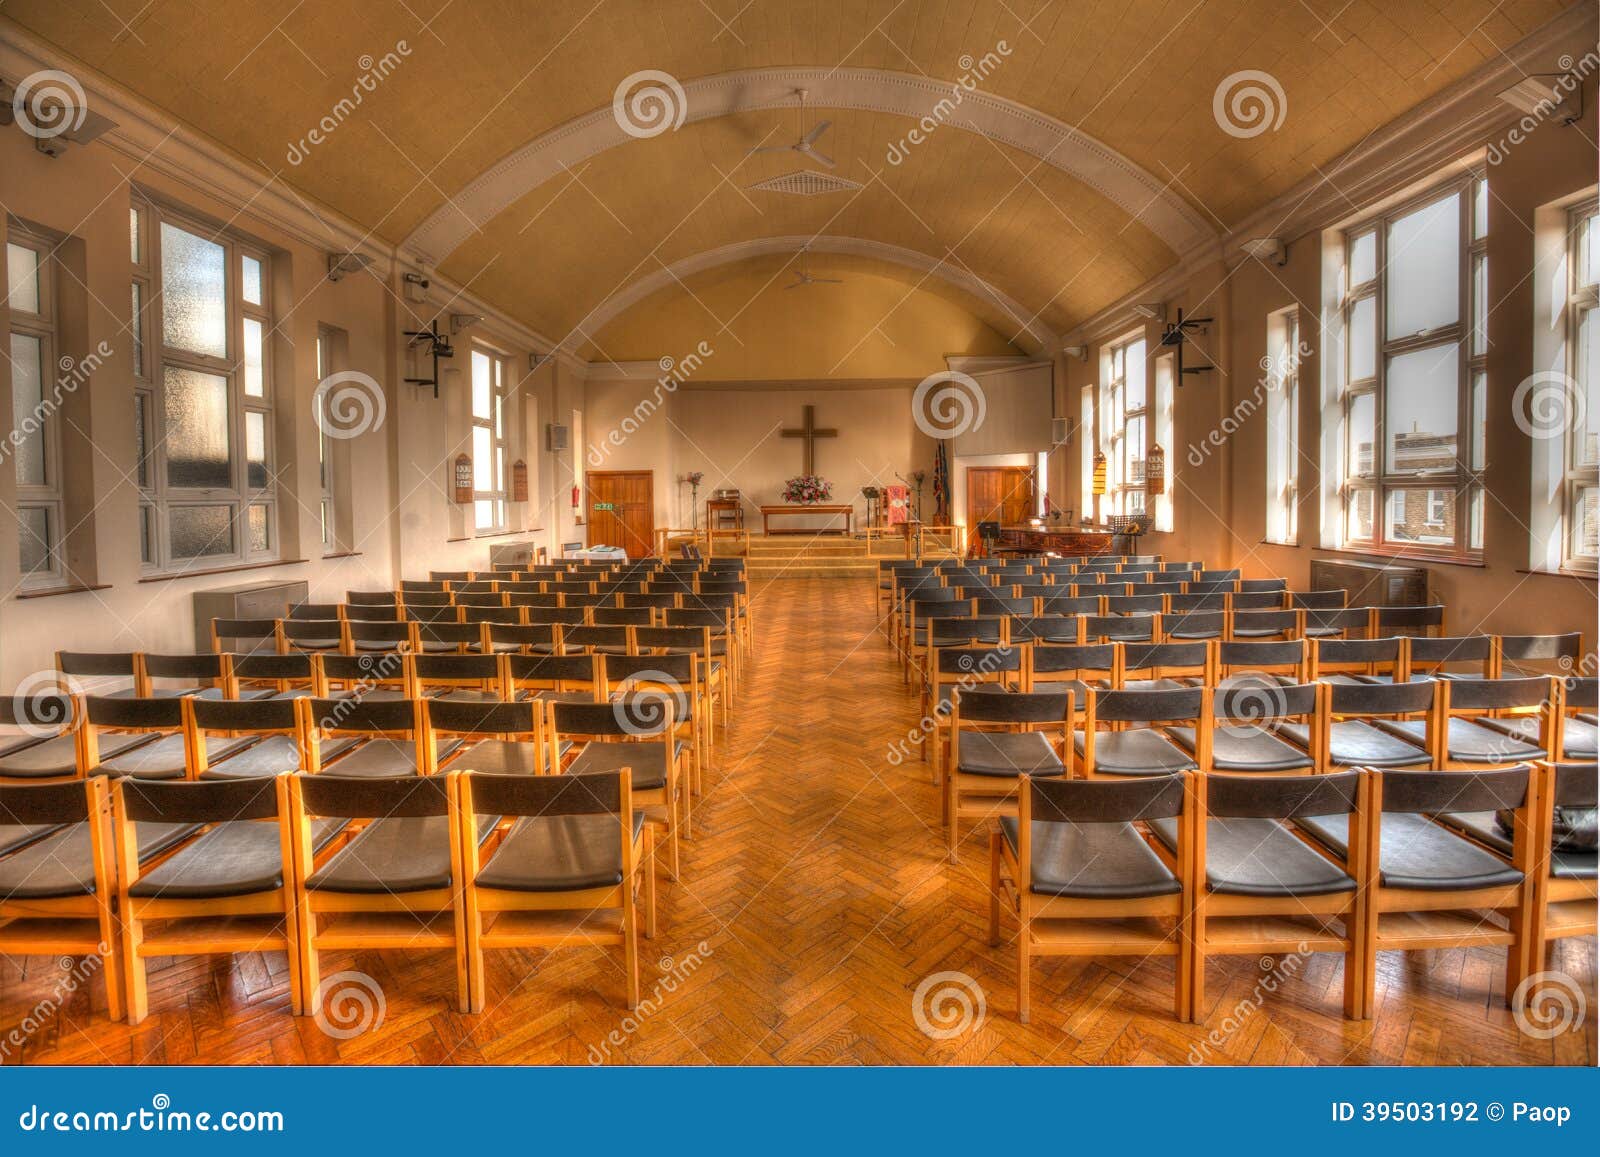 空的椅子在教会里库存照片 图片包括有线路 活动 教会 室内 对象 设计 没人 装饰